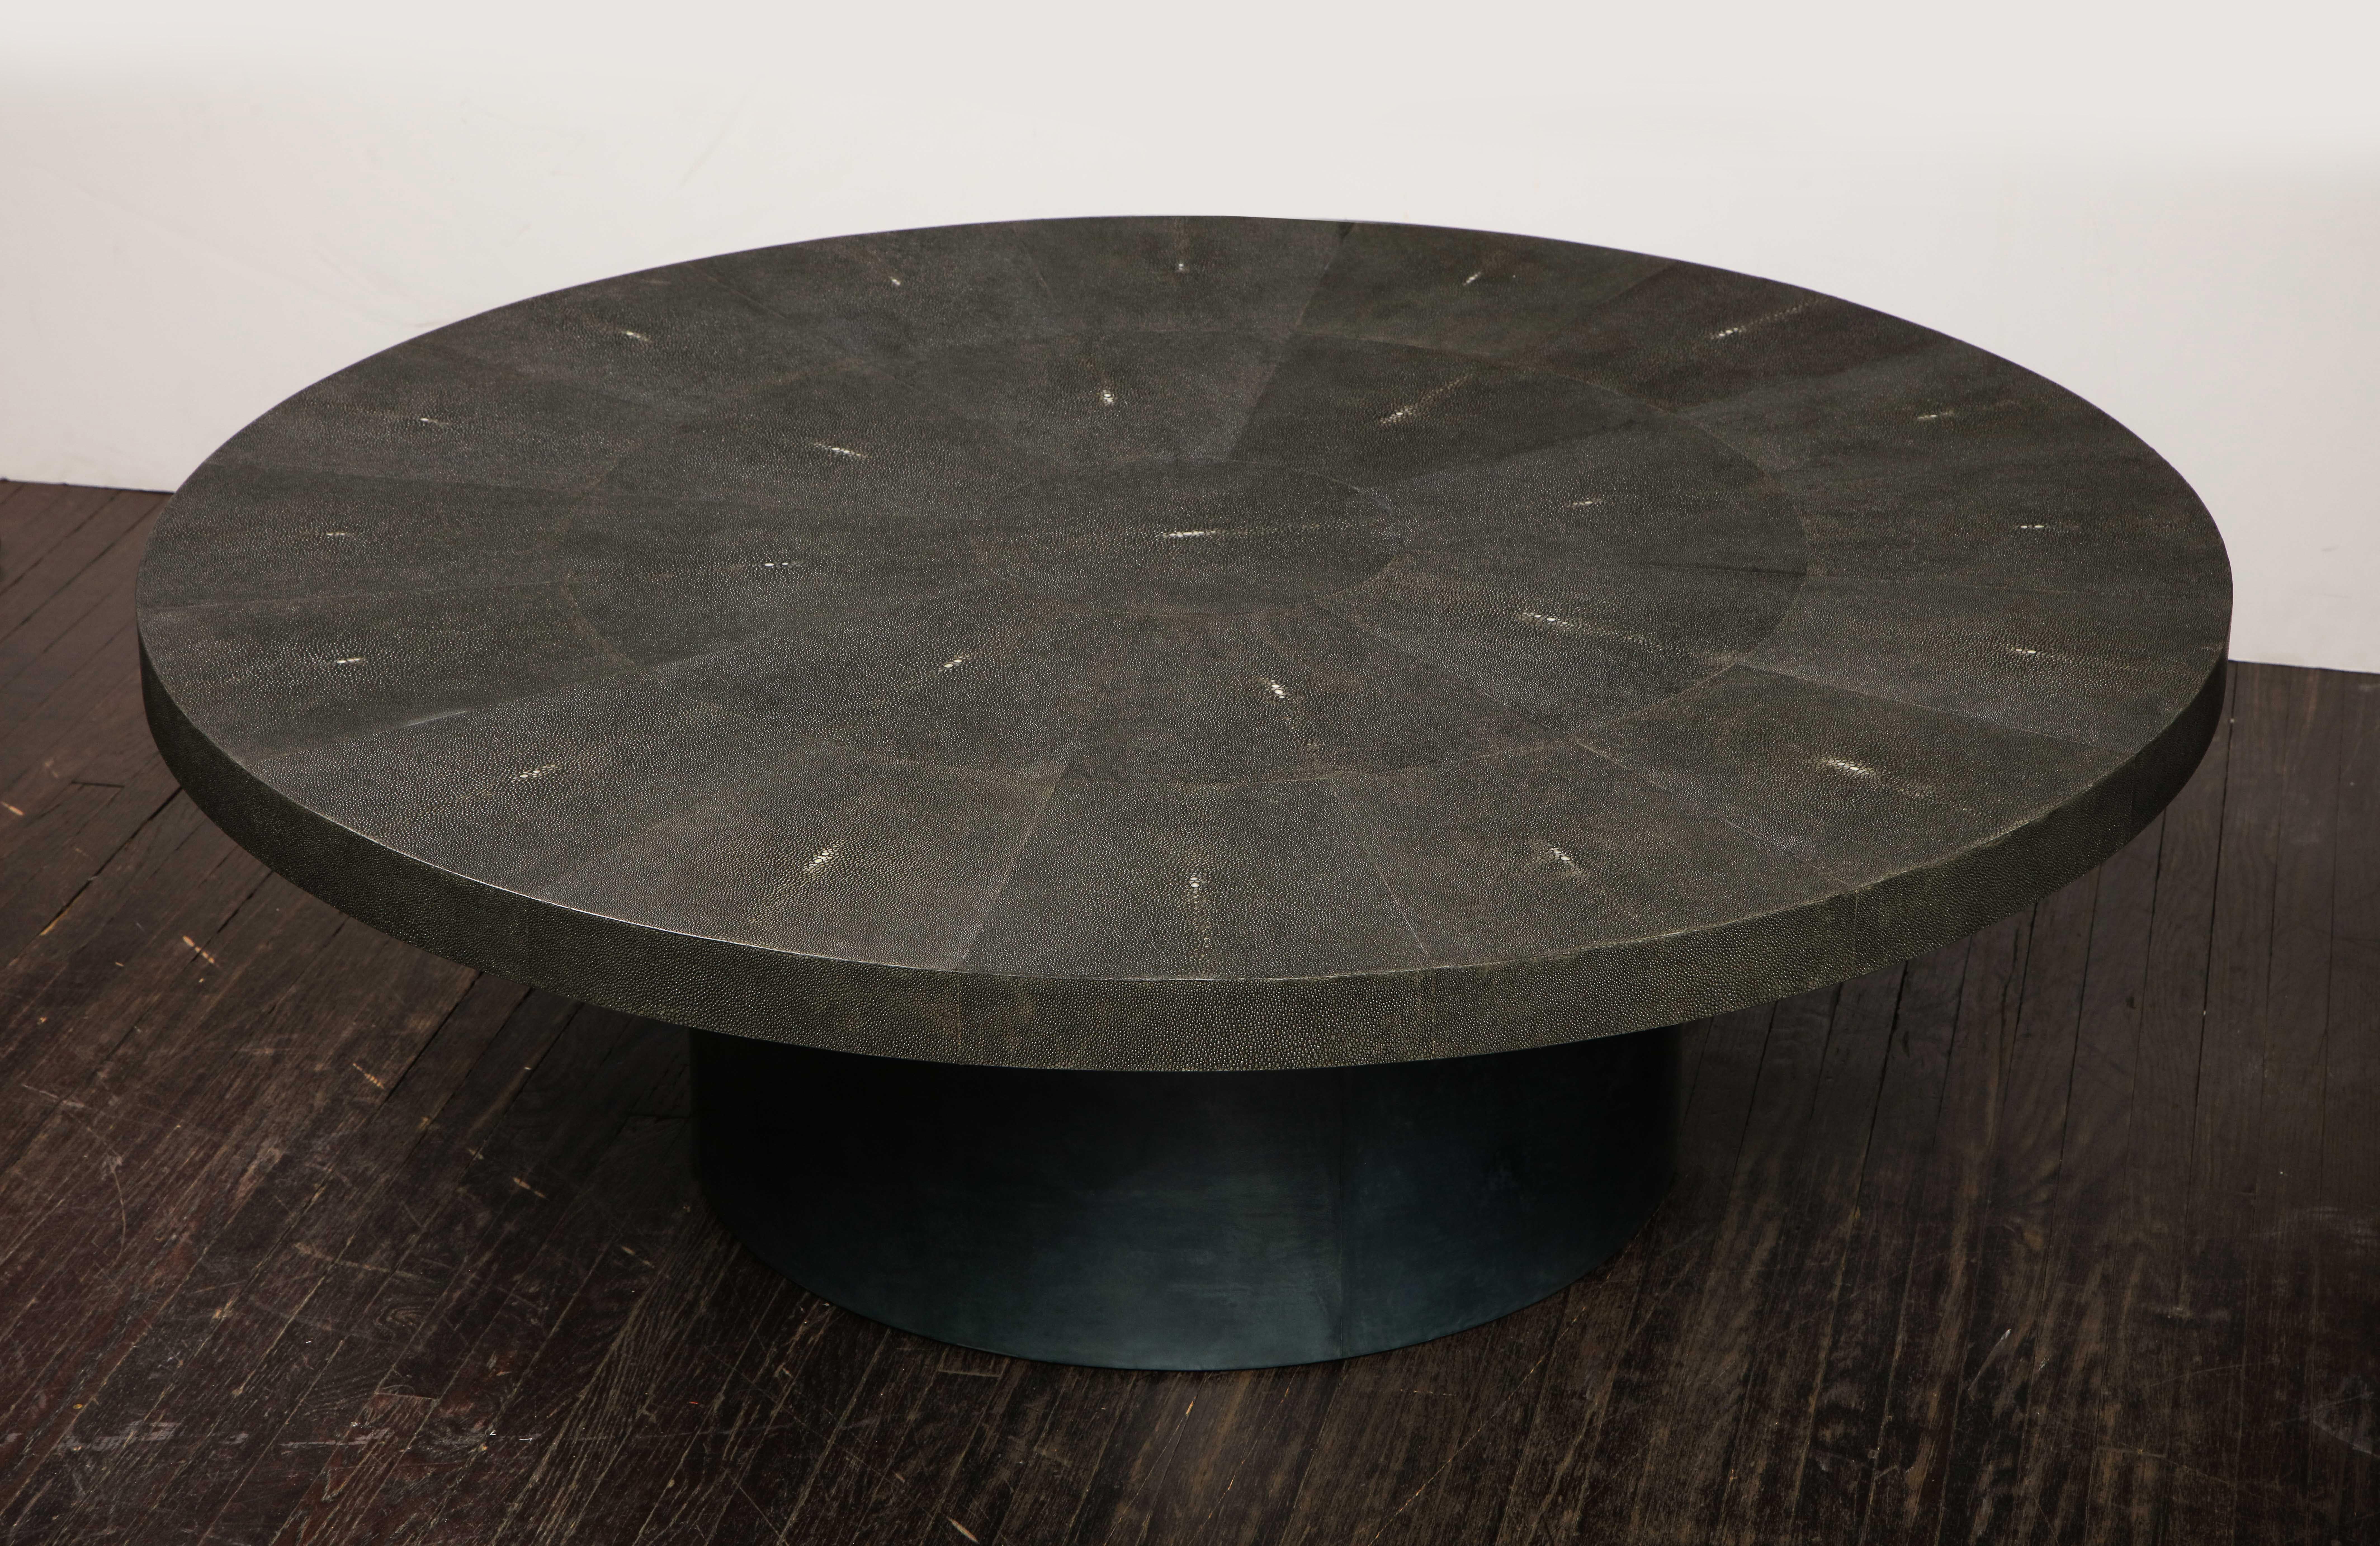 Table ronde sur mesure en galuchat noir véritable avec base en parchemin. La personnalisation est possible dans différentes tailles et couleurs.